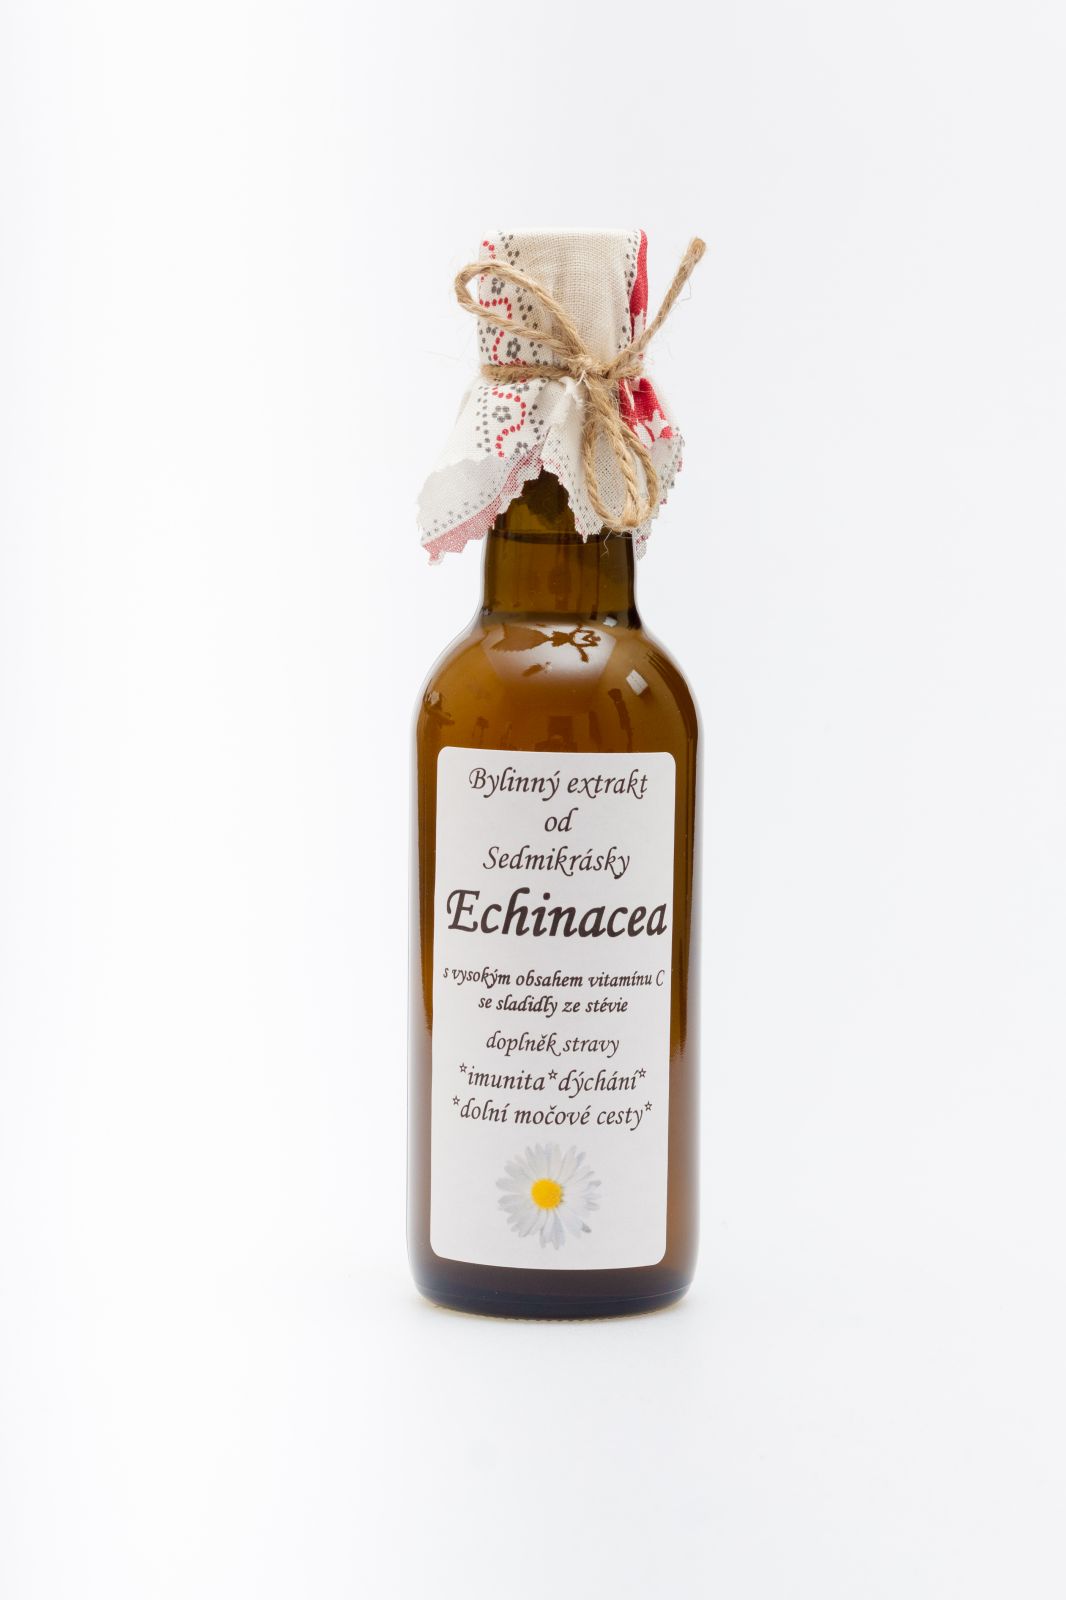 Bylinný extrakt Echinacea 250ml imunita, dýchání a močové cesty doplněk stravy Rodinná farma Sedmikráska